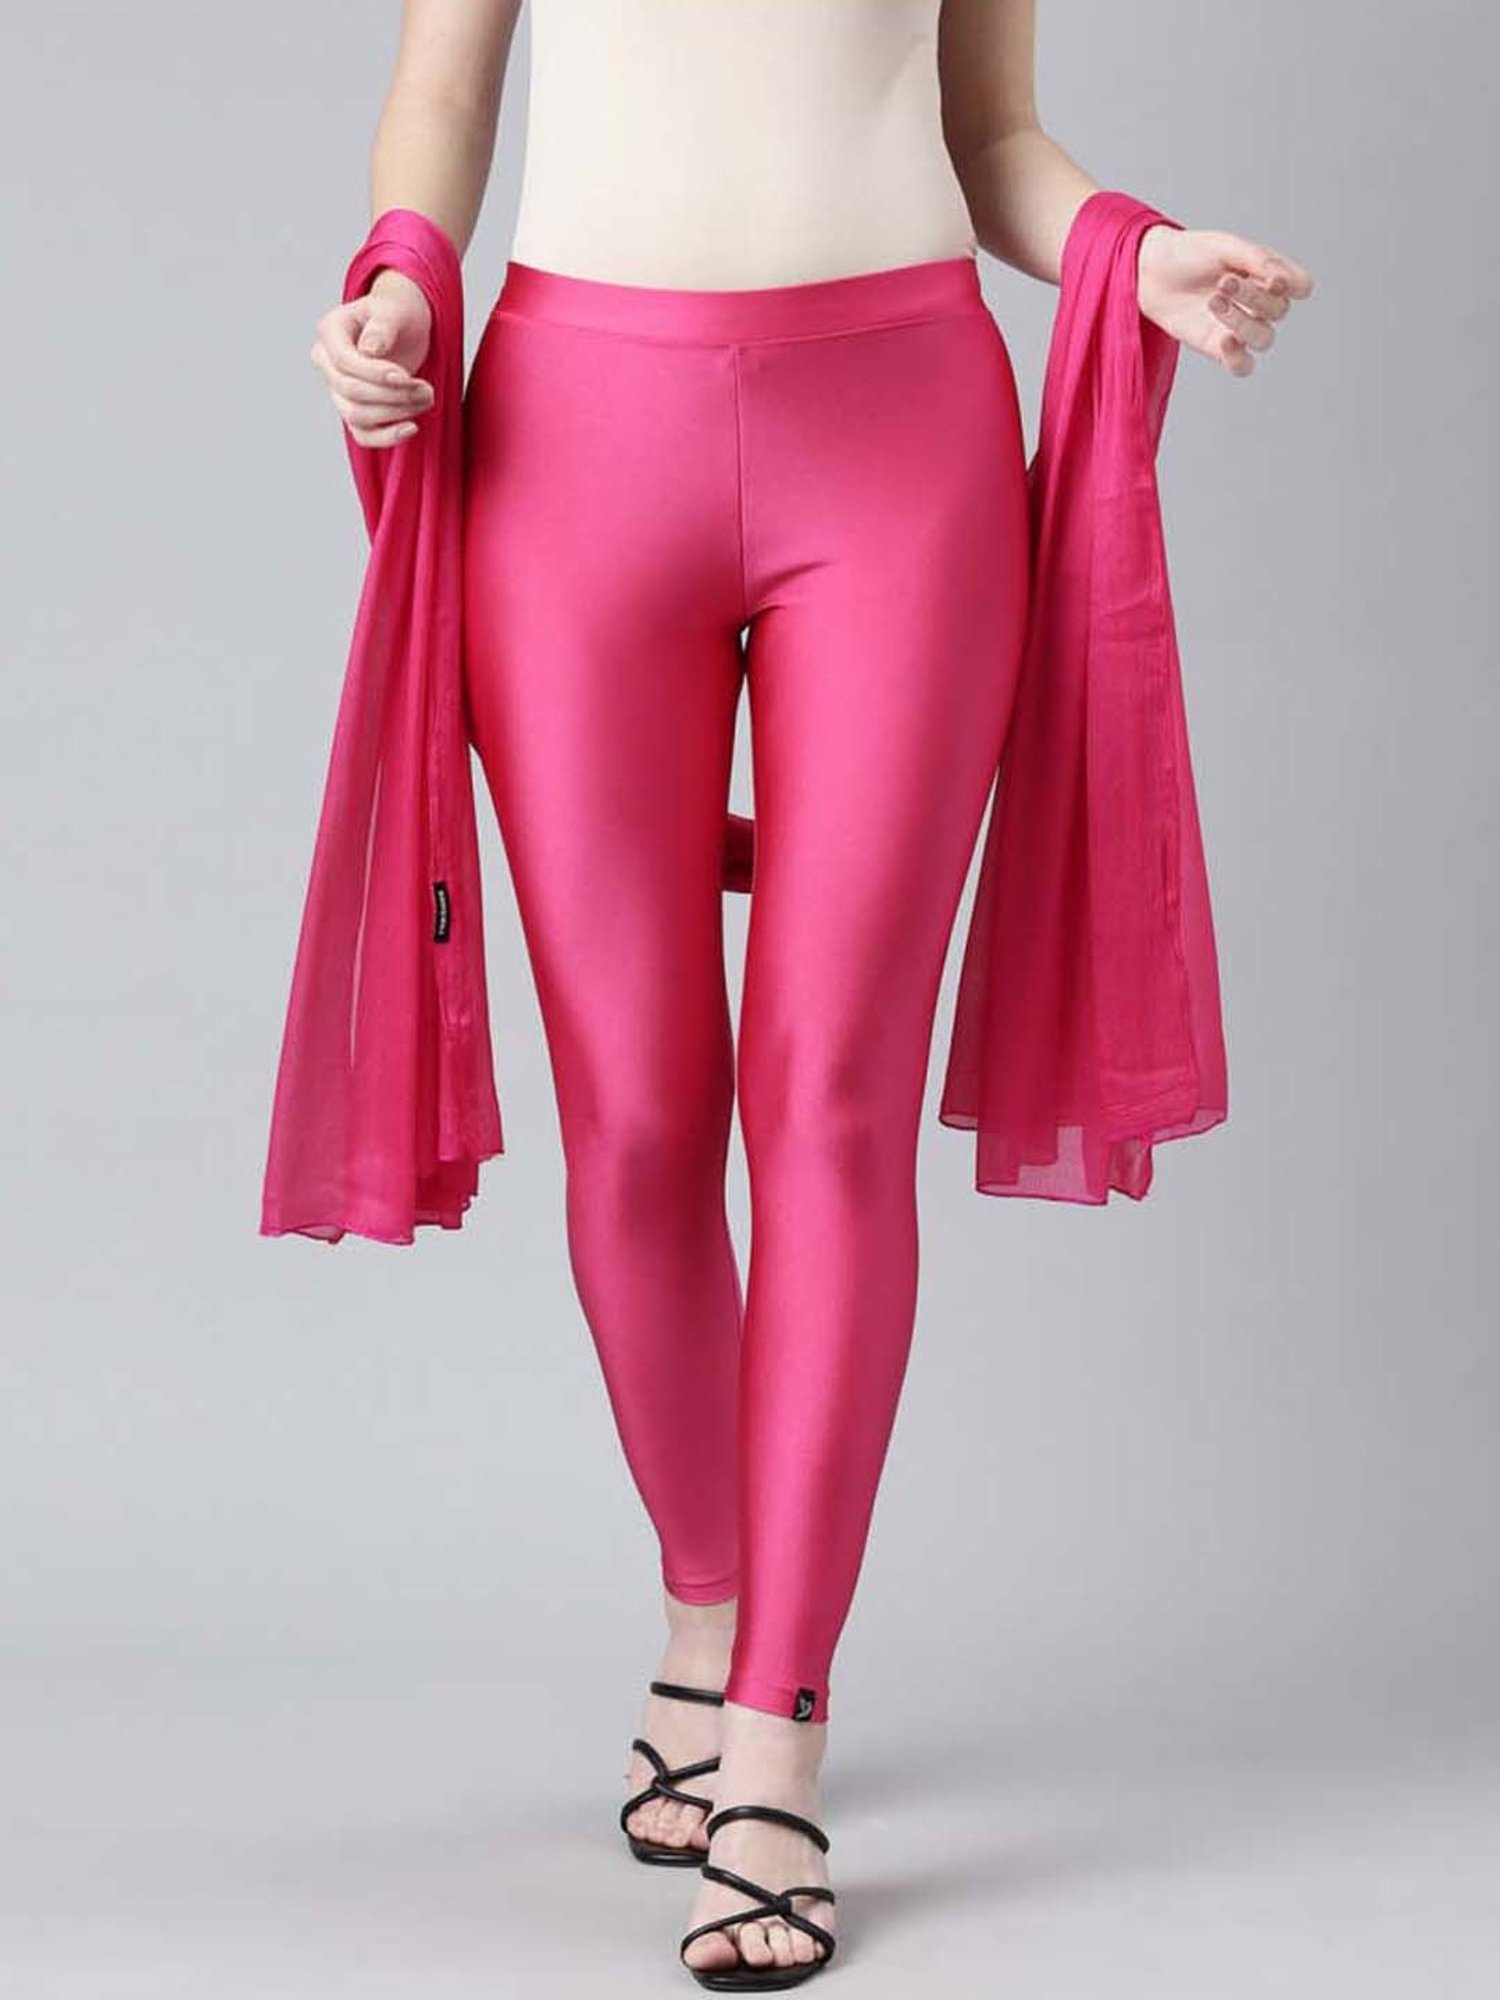 Nwt torrid liquid neon pink premium peddle pusher leggings. Size 2x 18-20 |  Neon pink, Clothes design, Torrid